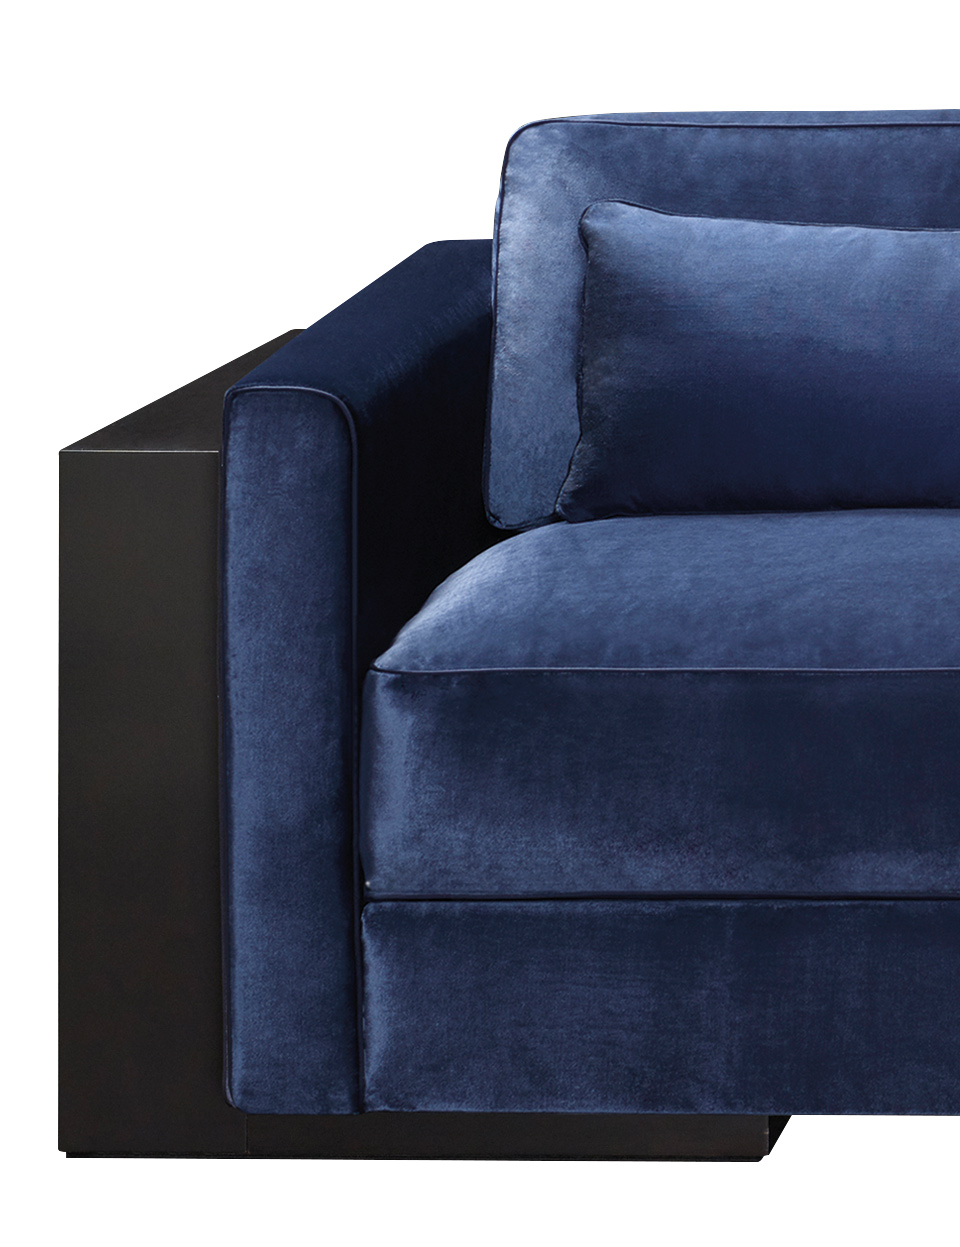 Ipparco — деревянный диван с подушками сиденья и спинки, обитыми тканью, из коллекции Amaranthine Tales компании Promemoria | Promemoria